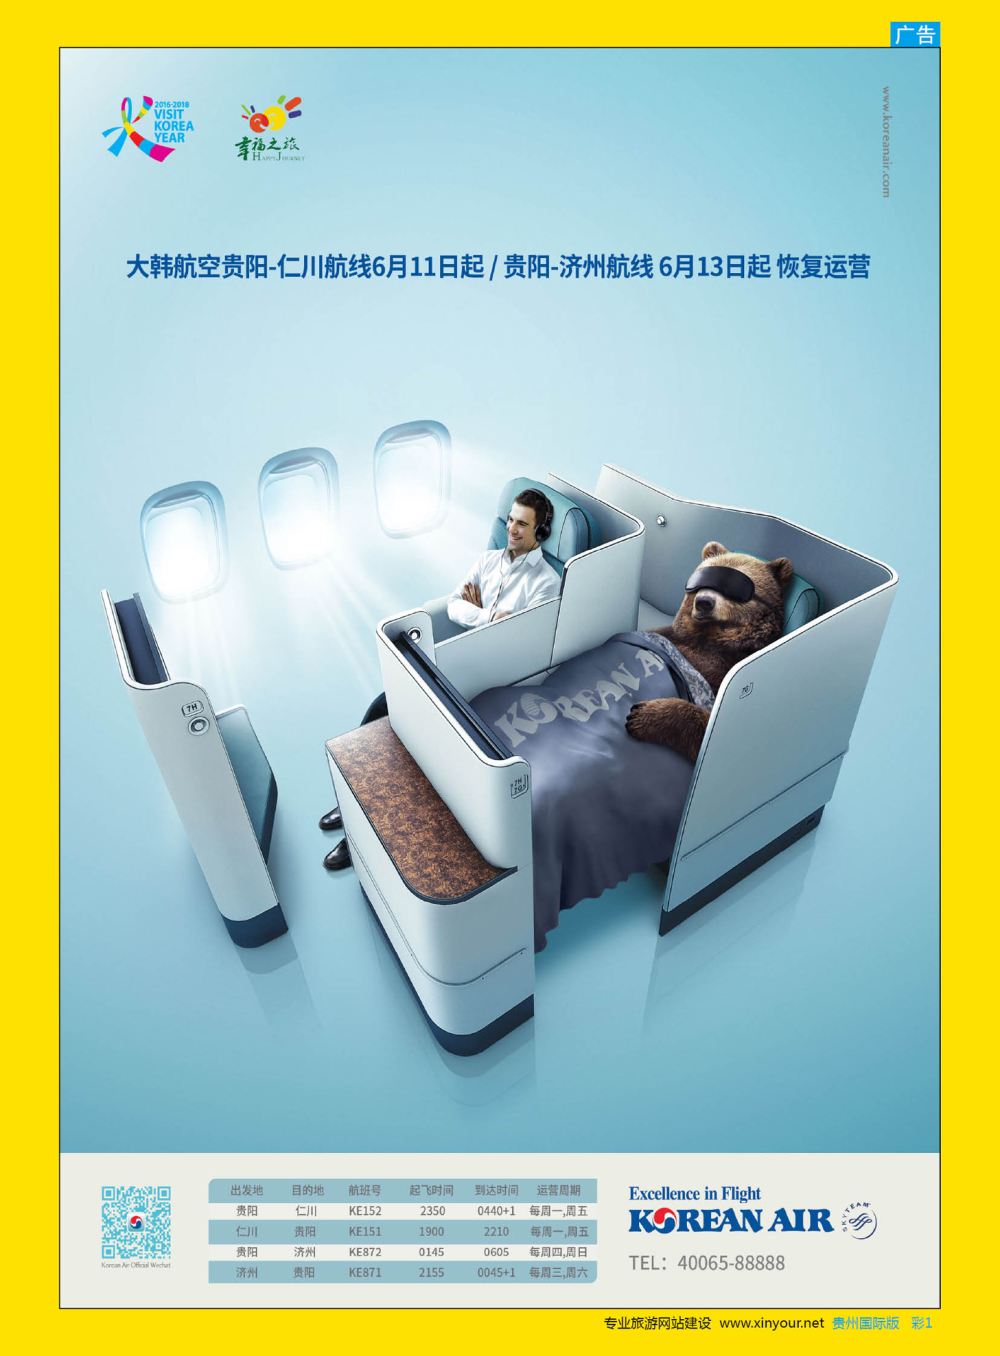 彩1  幸福之旅-大韩航空贵阳至仁川、济州航线6月恢复运营